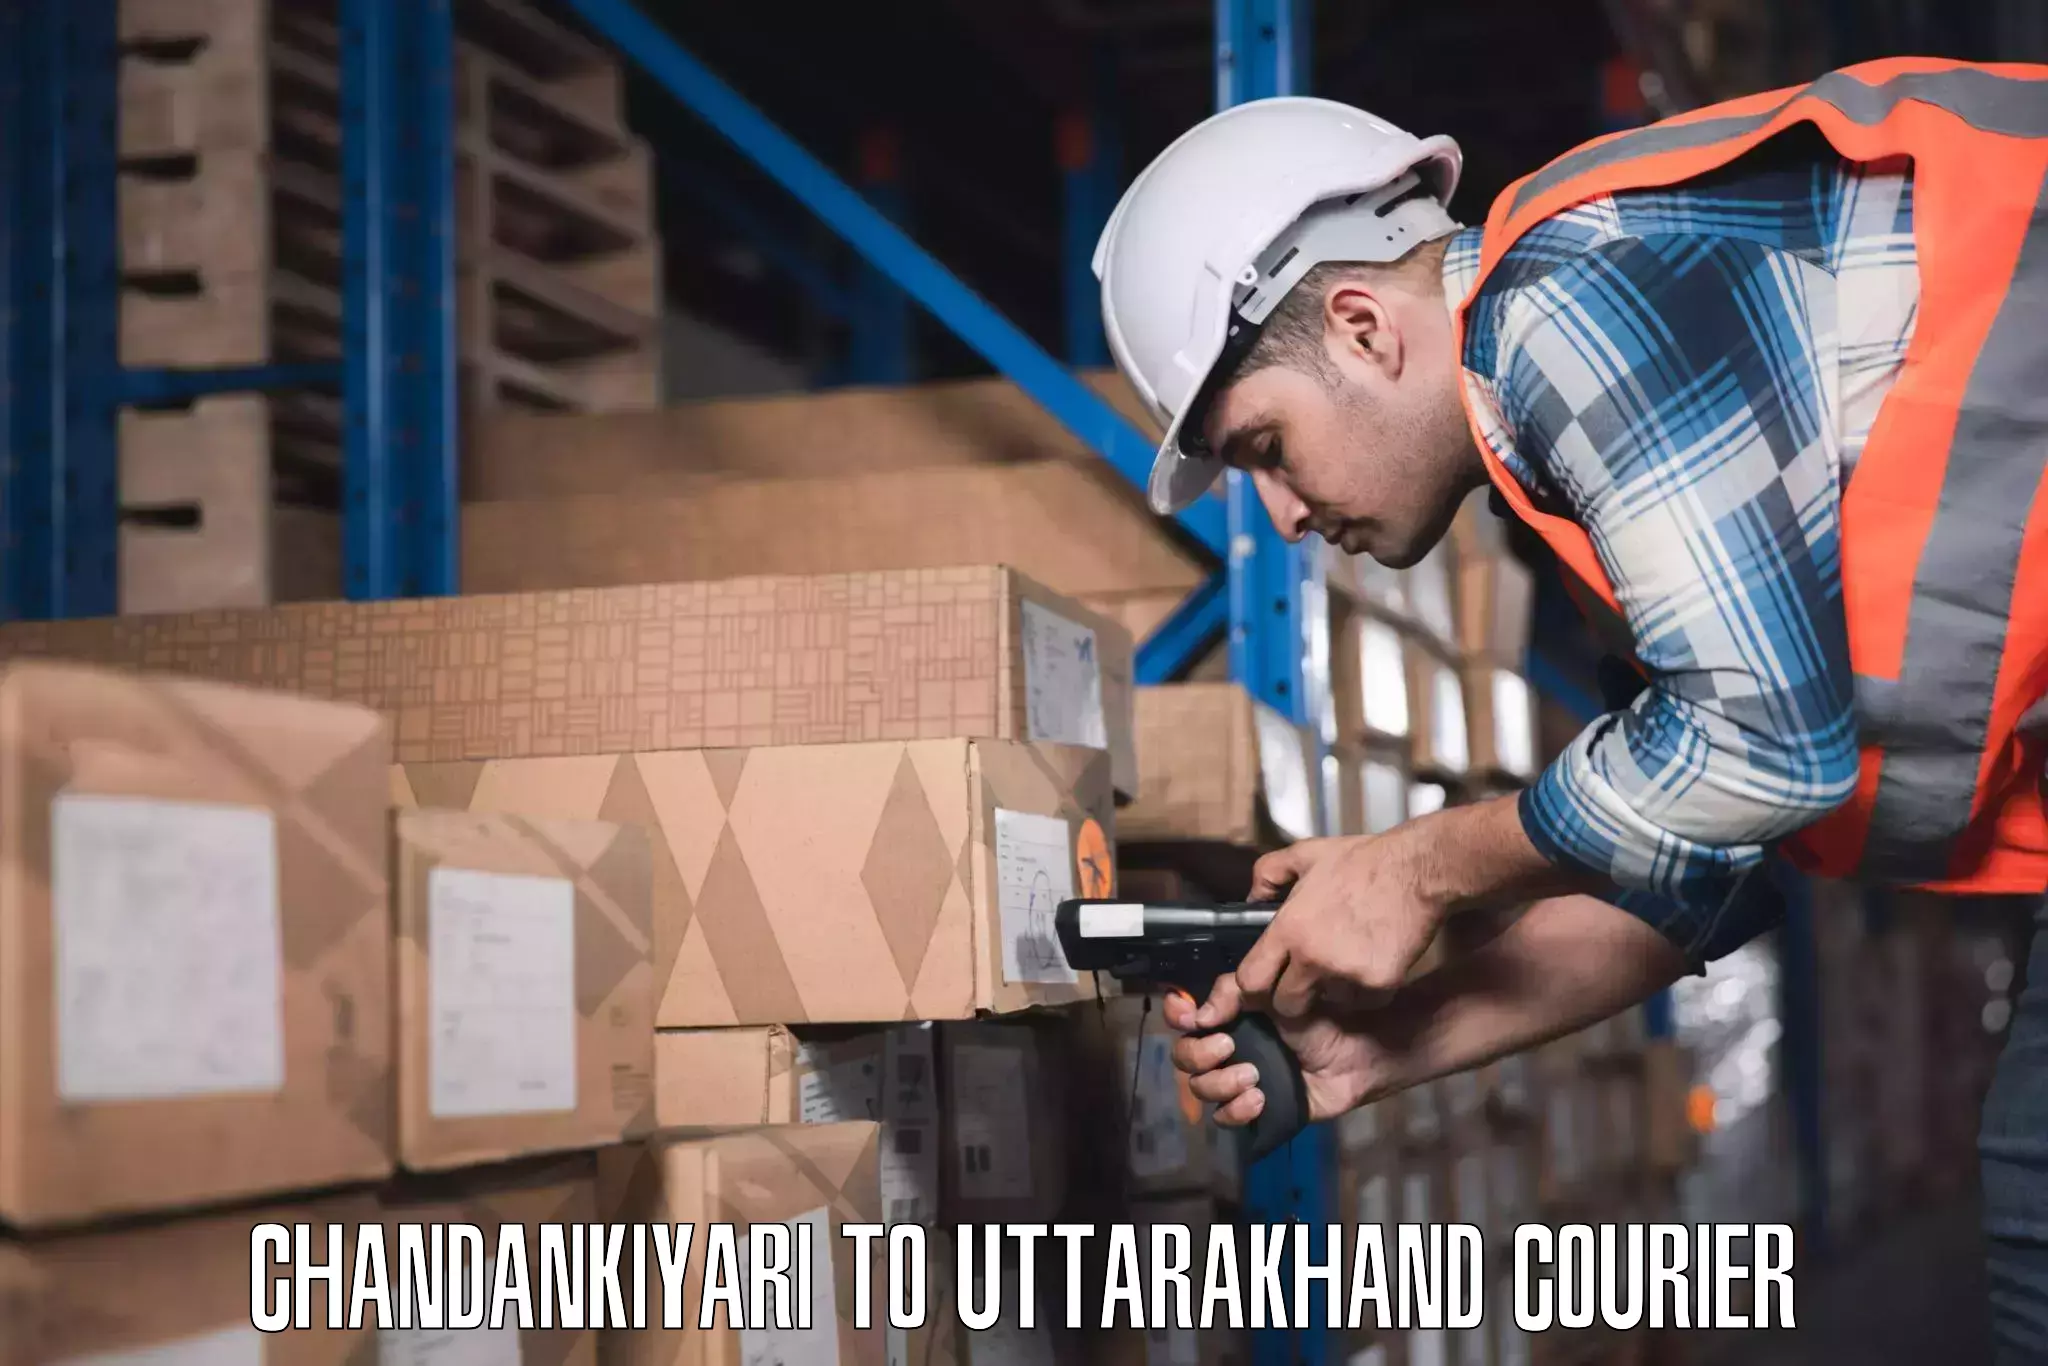 Customized luggage delivery Chandankiyari to IIT Roorkee